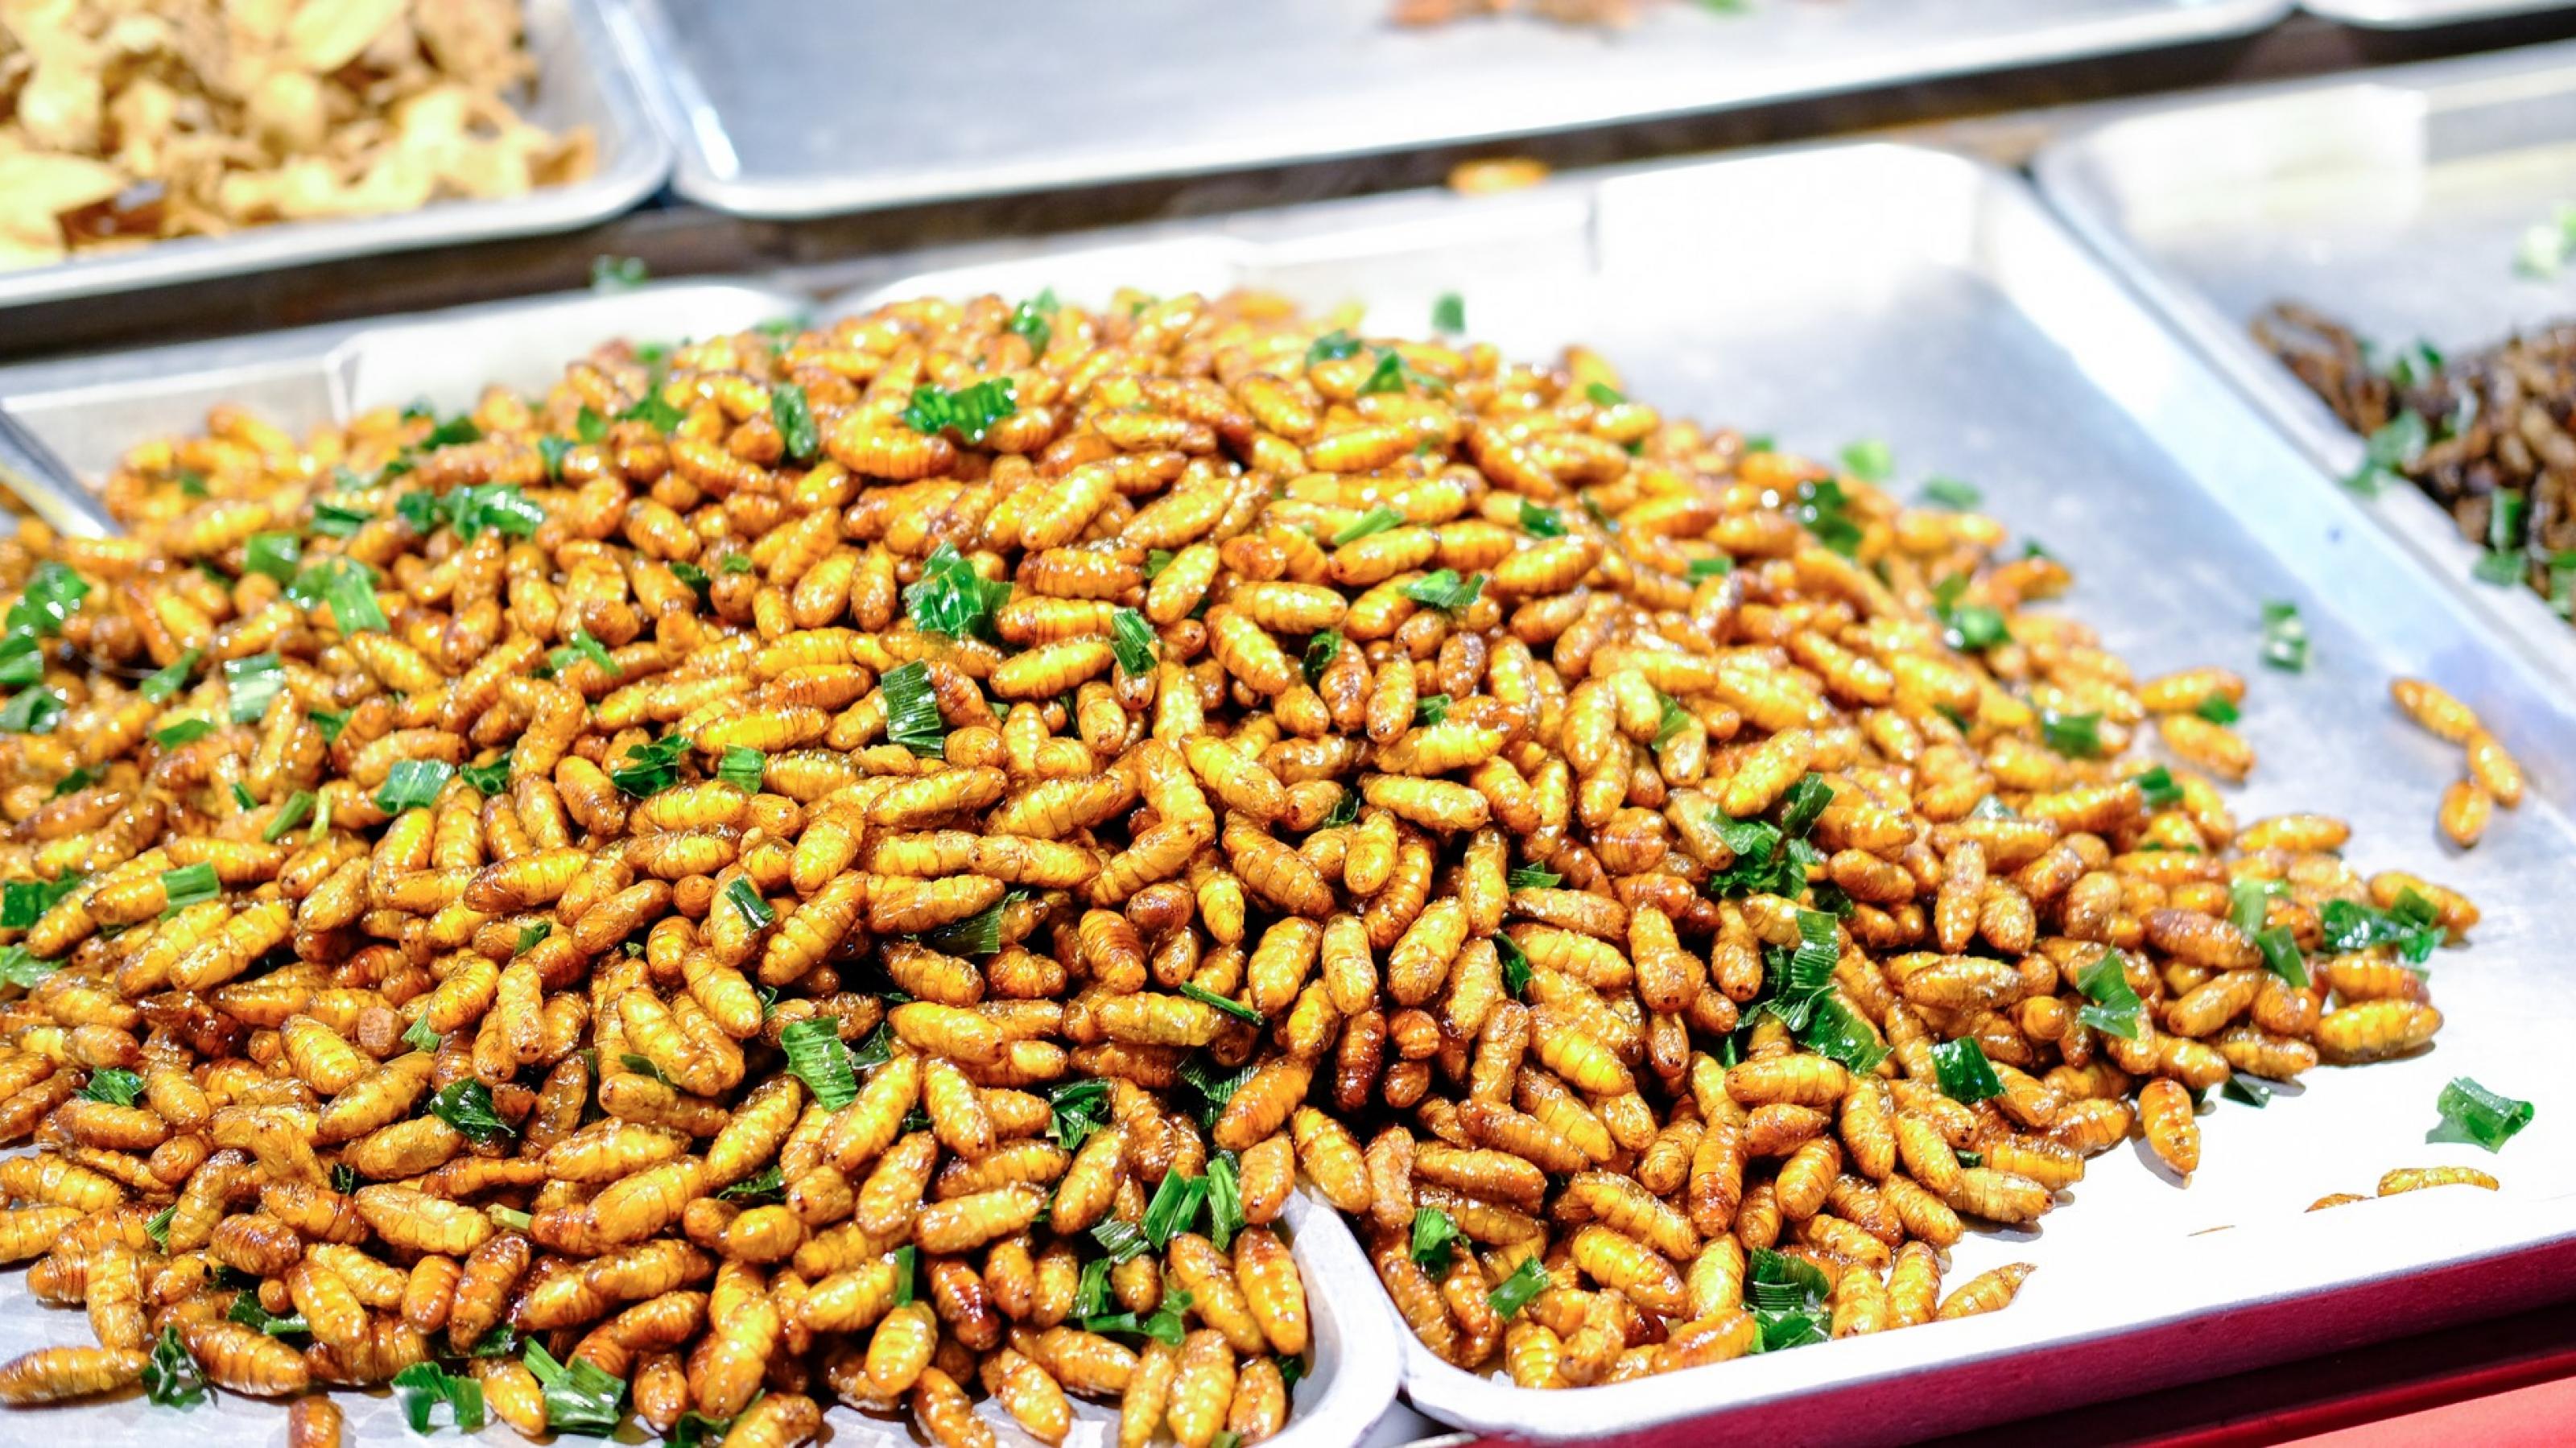 In Deutschland ungewöhnlich, in Asien Alltag. Blick in die Verkaufstheke eines Straßenverkaufs in Thailand: fritierte Insekten.